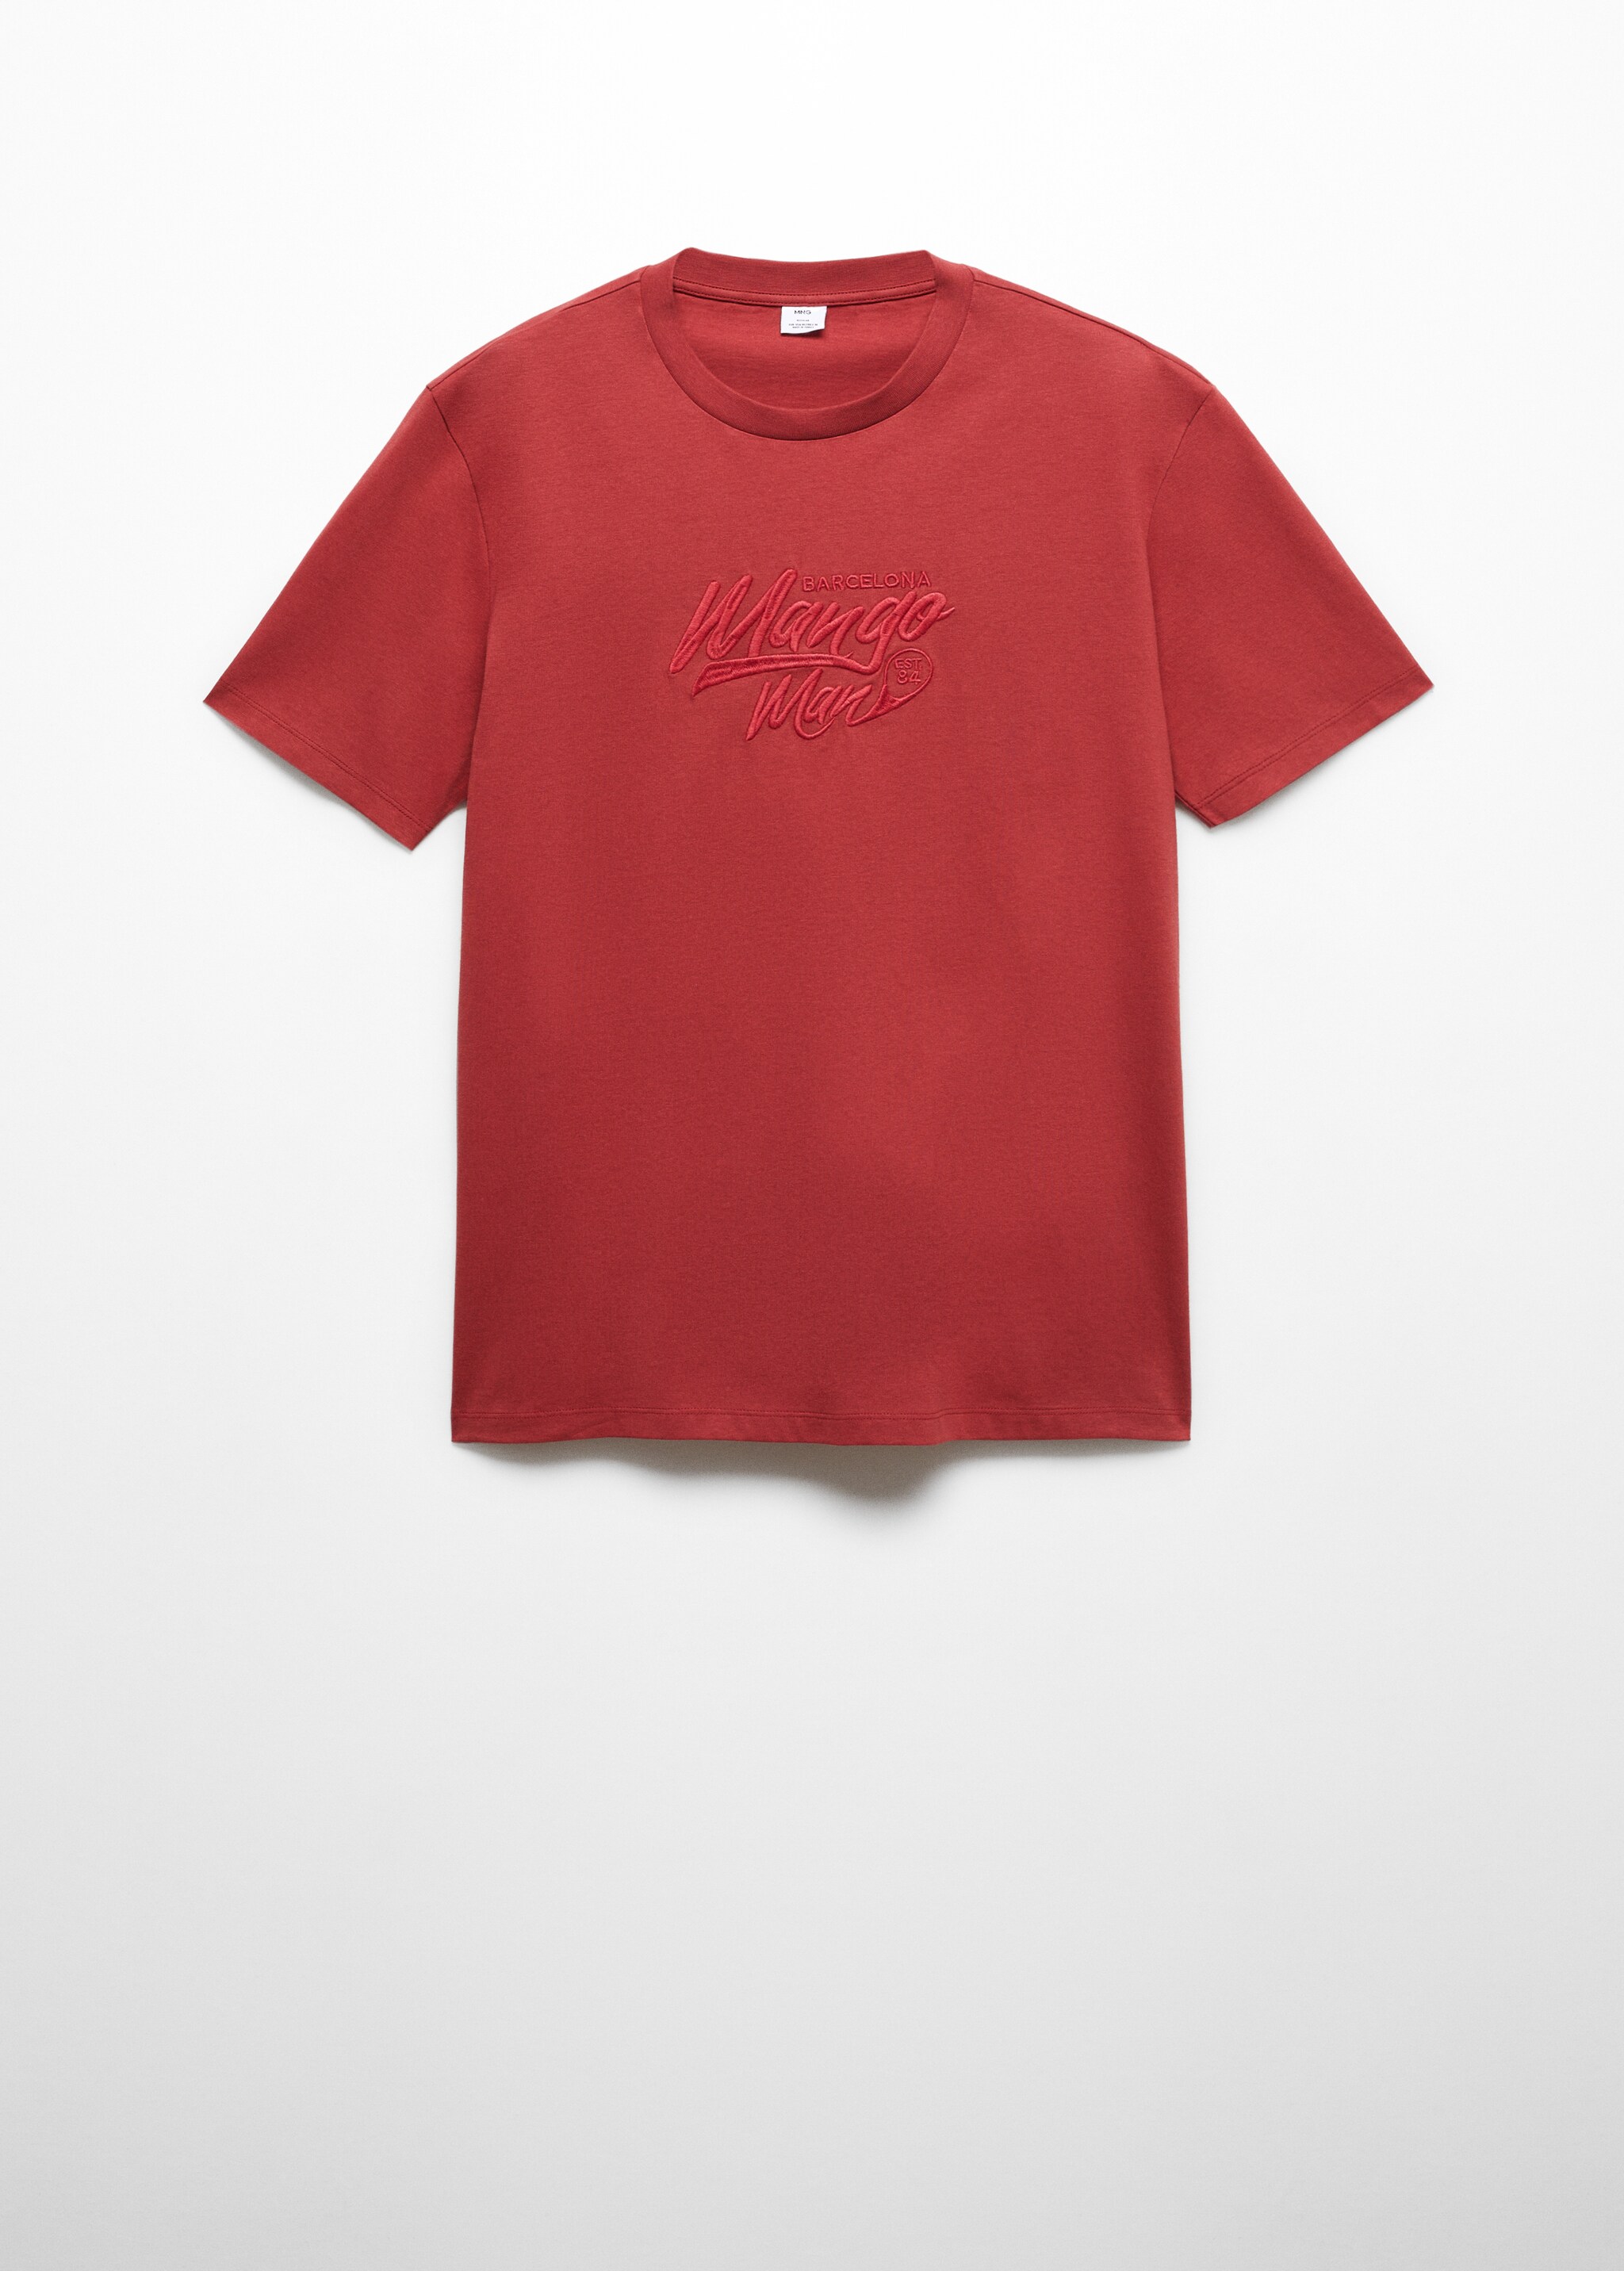 Camiseta 100% algodón logo bordado - Artículo sin modelo